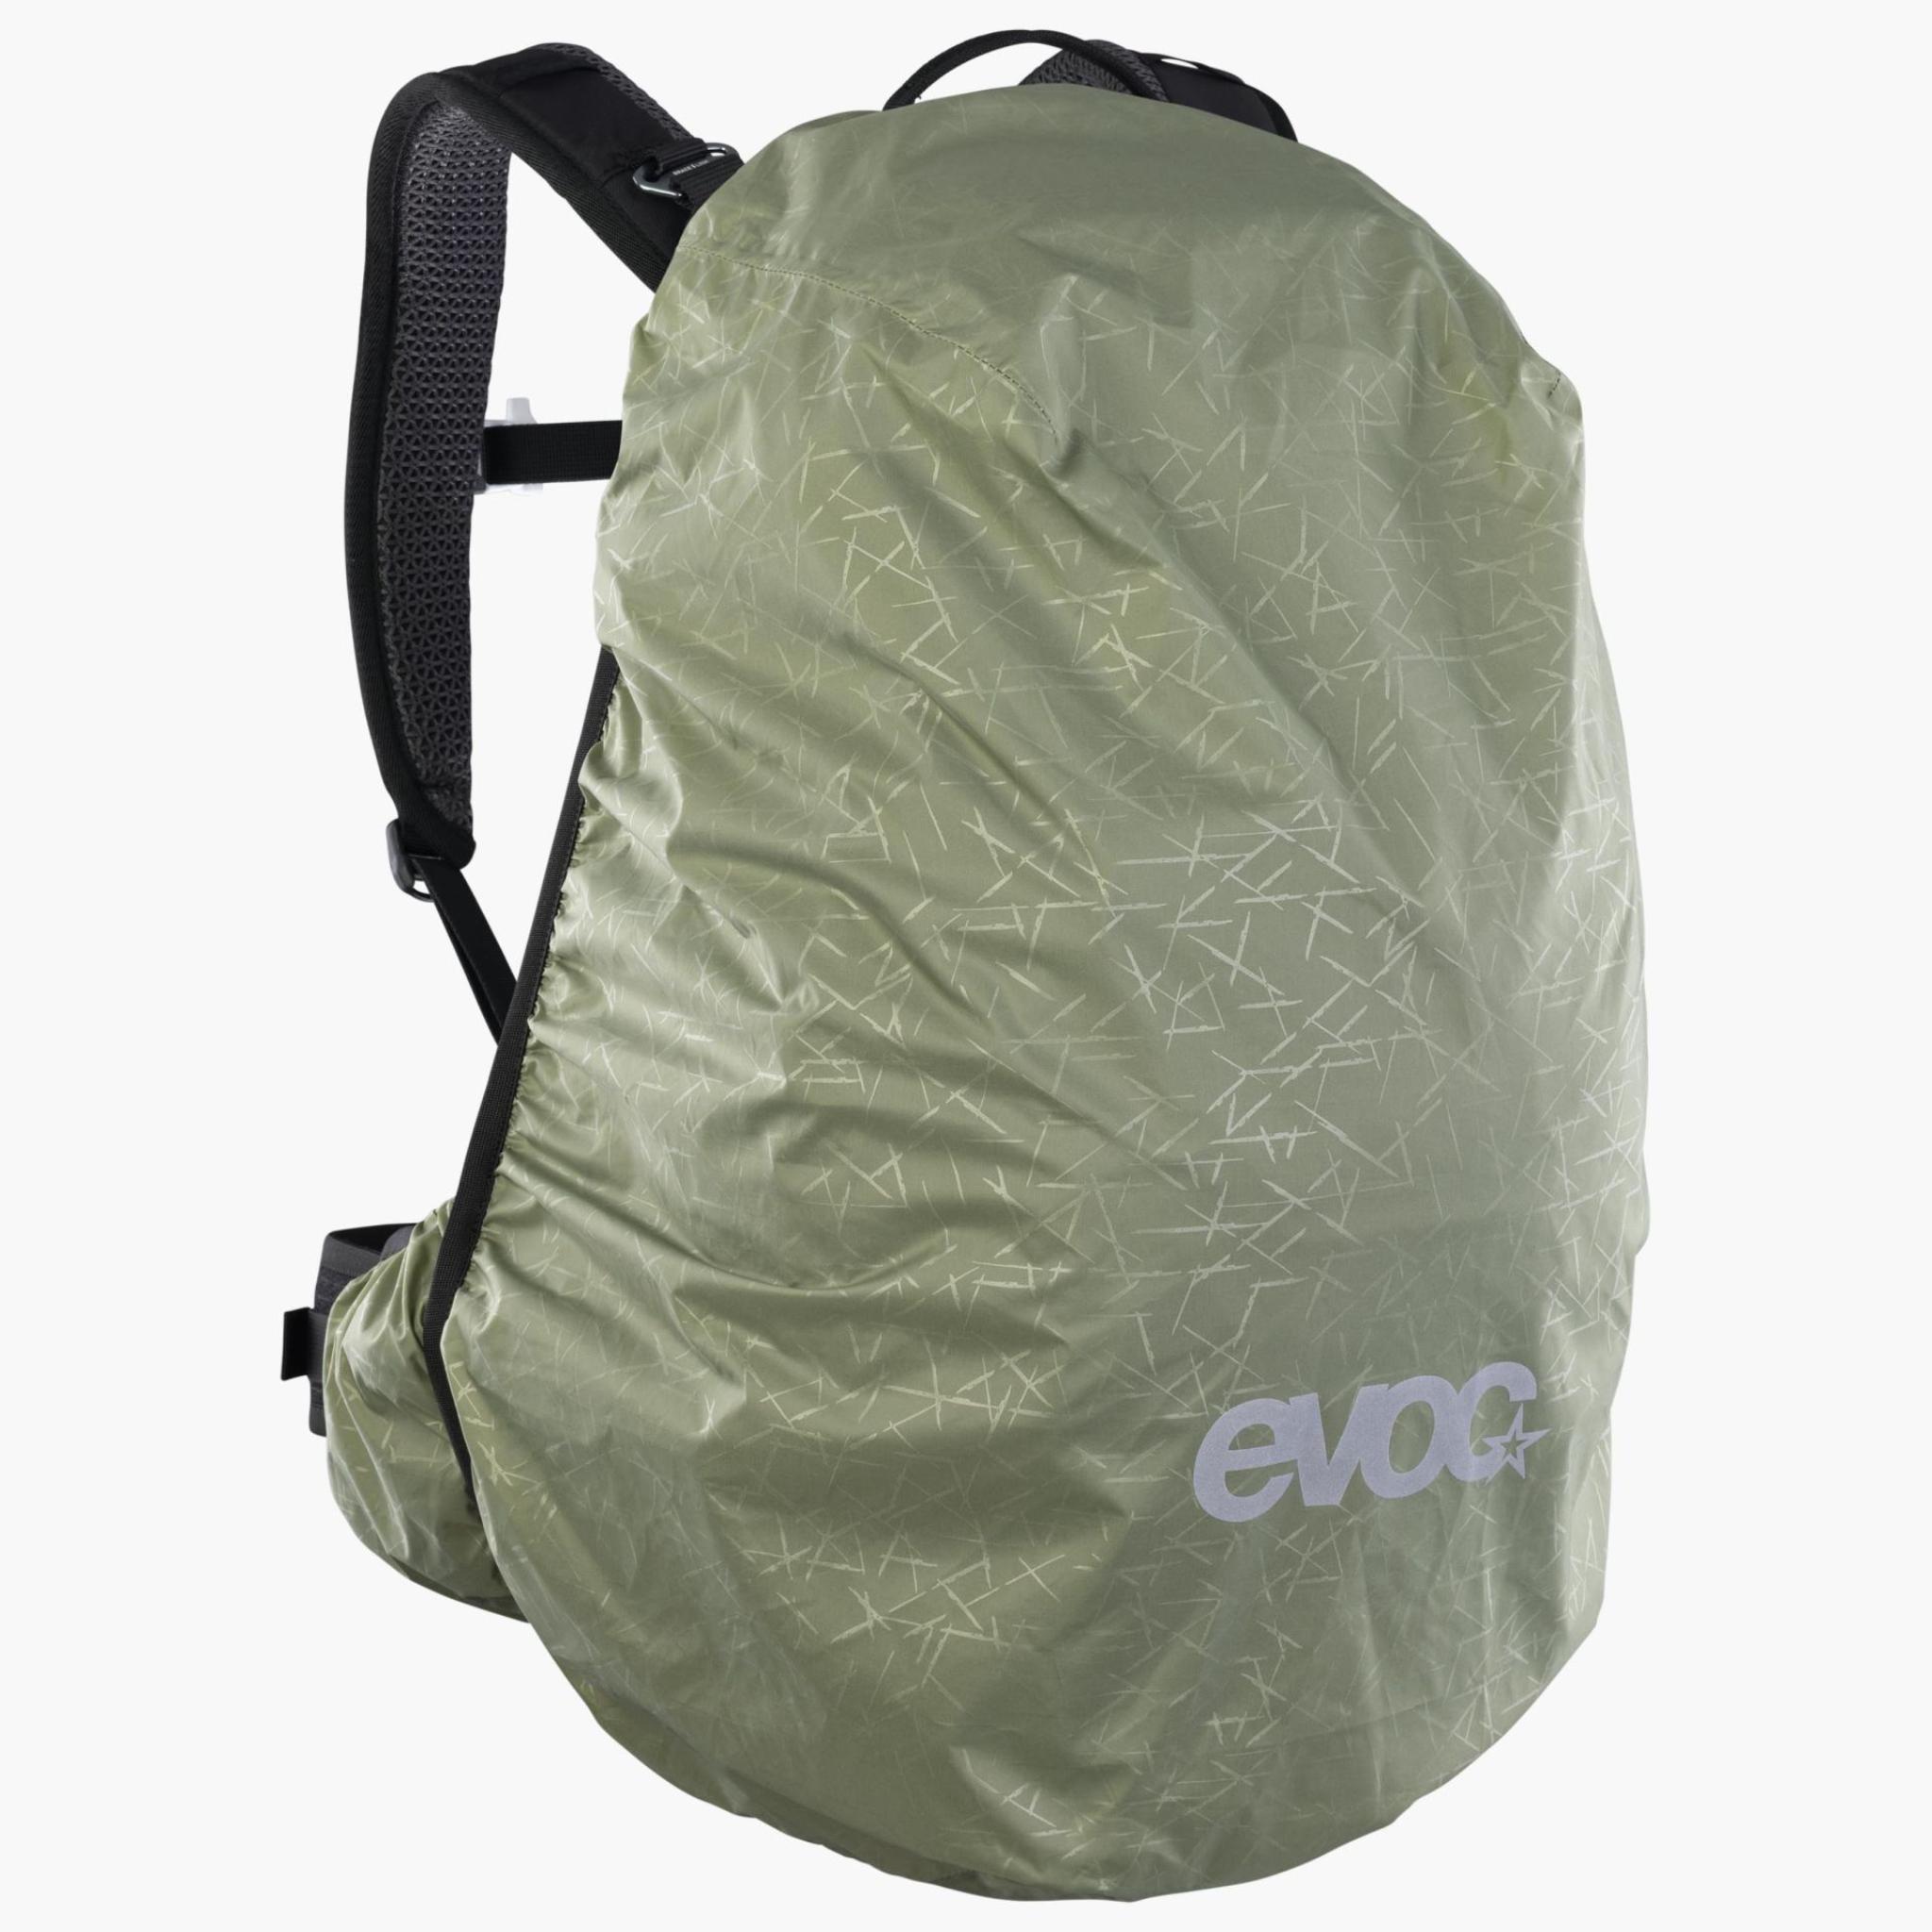 EVOC Explorer Pro 26 BACKPACK